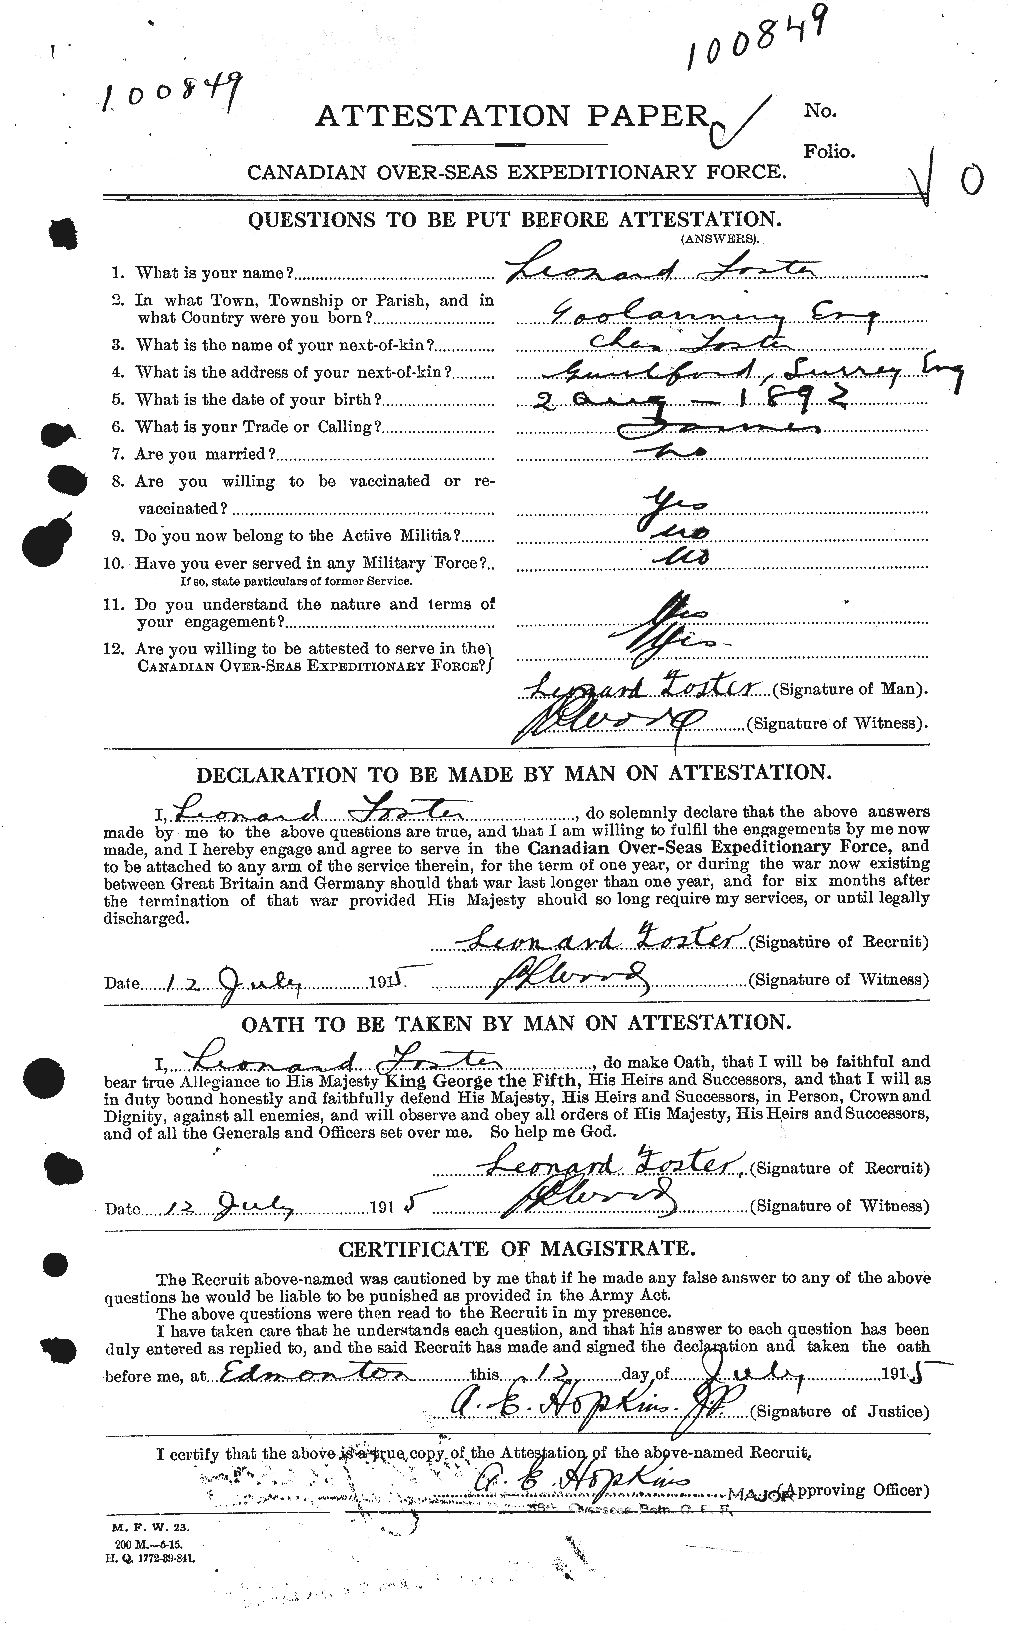 Dossiers du Personnel de la Première Guerre mondiale - CEC 333400a